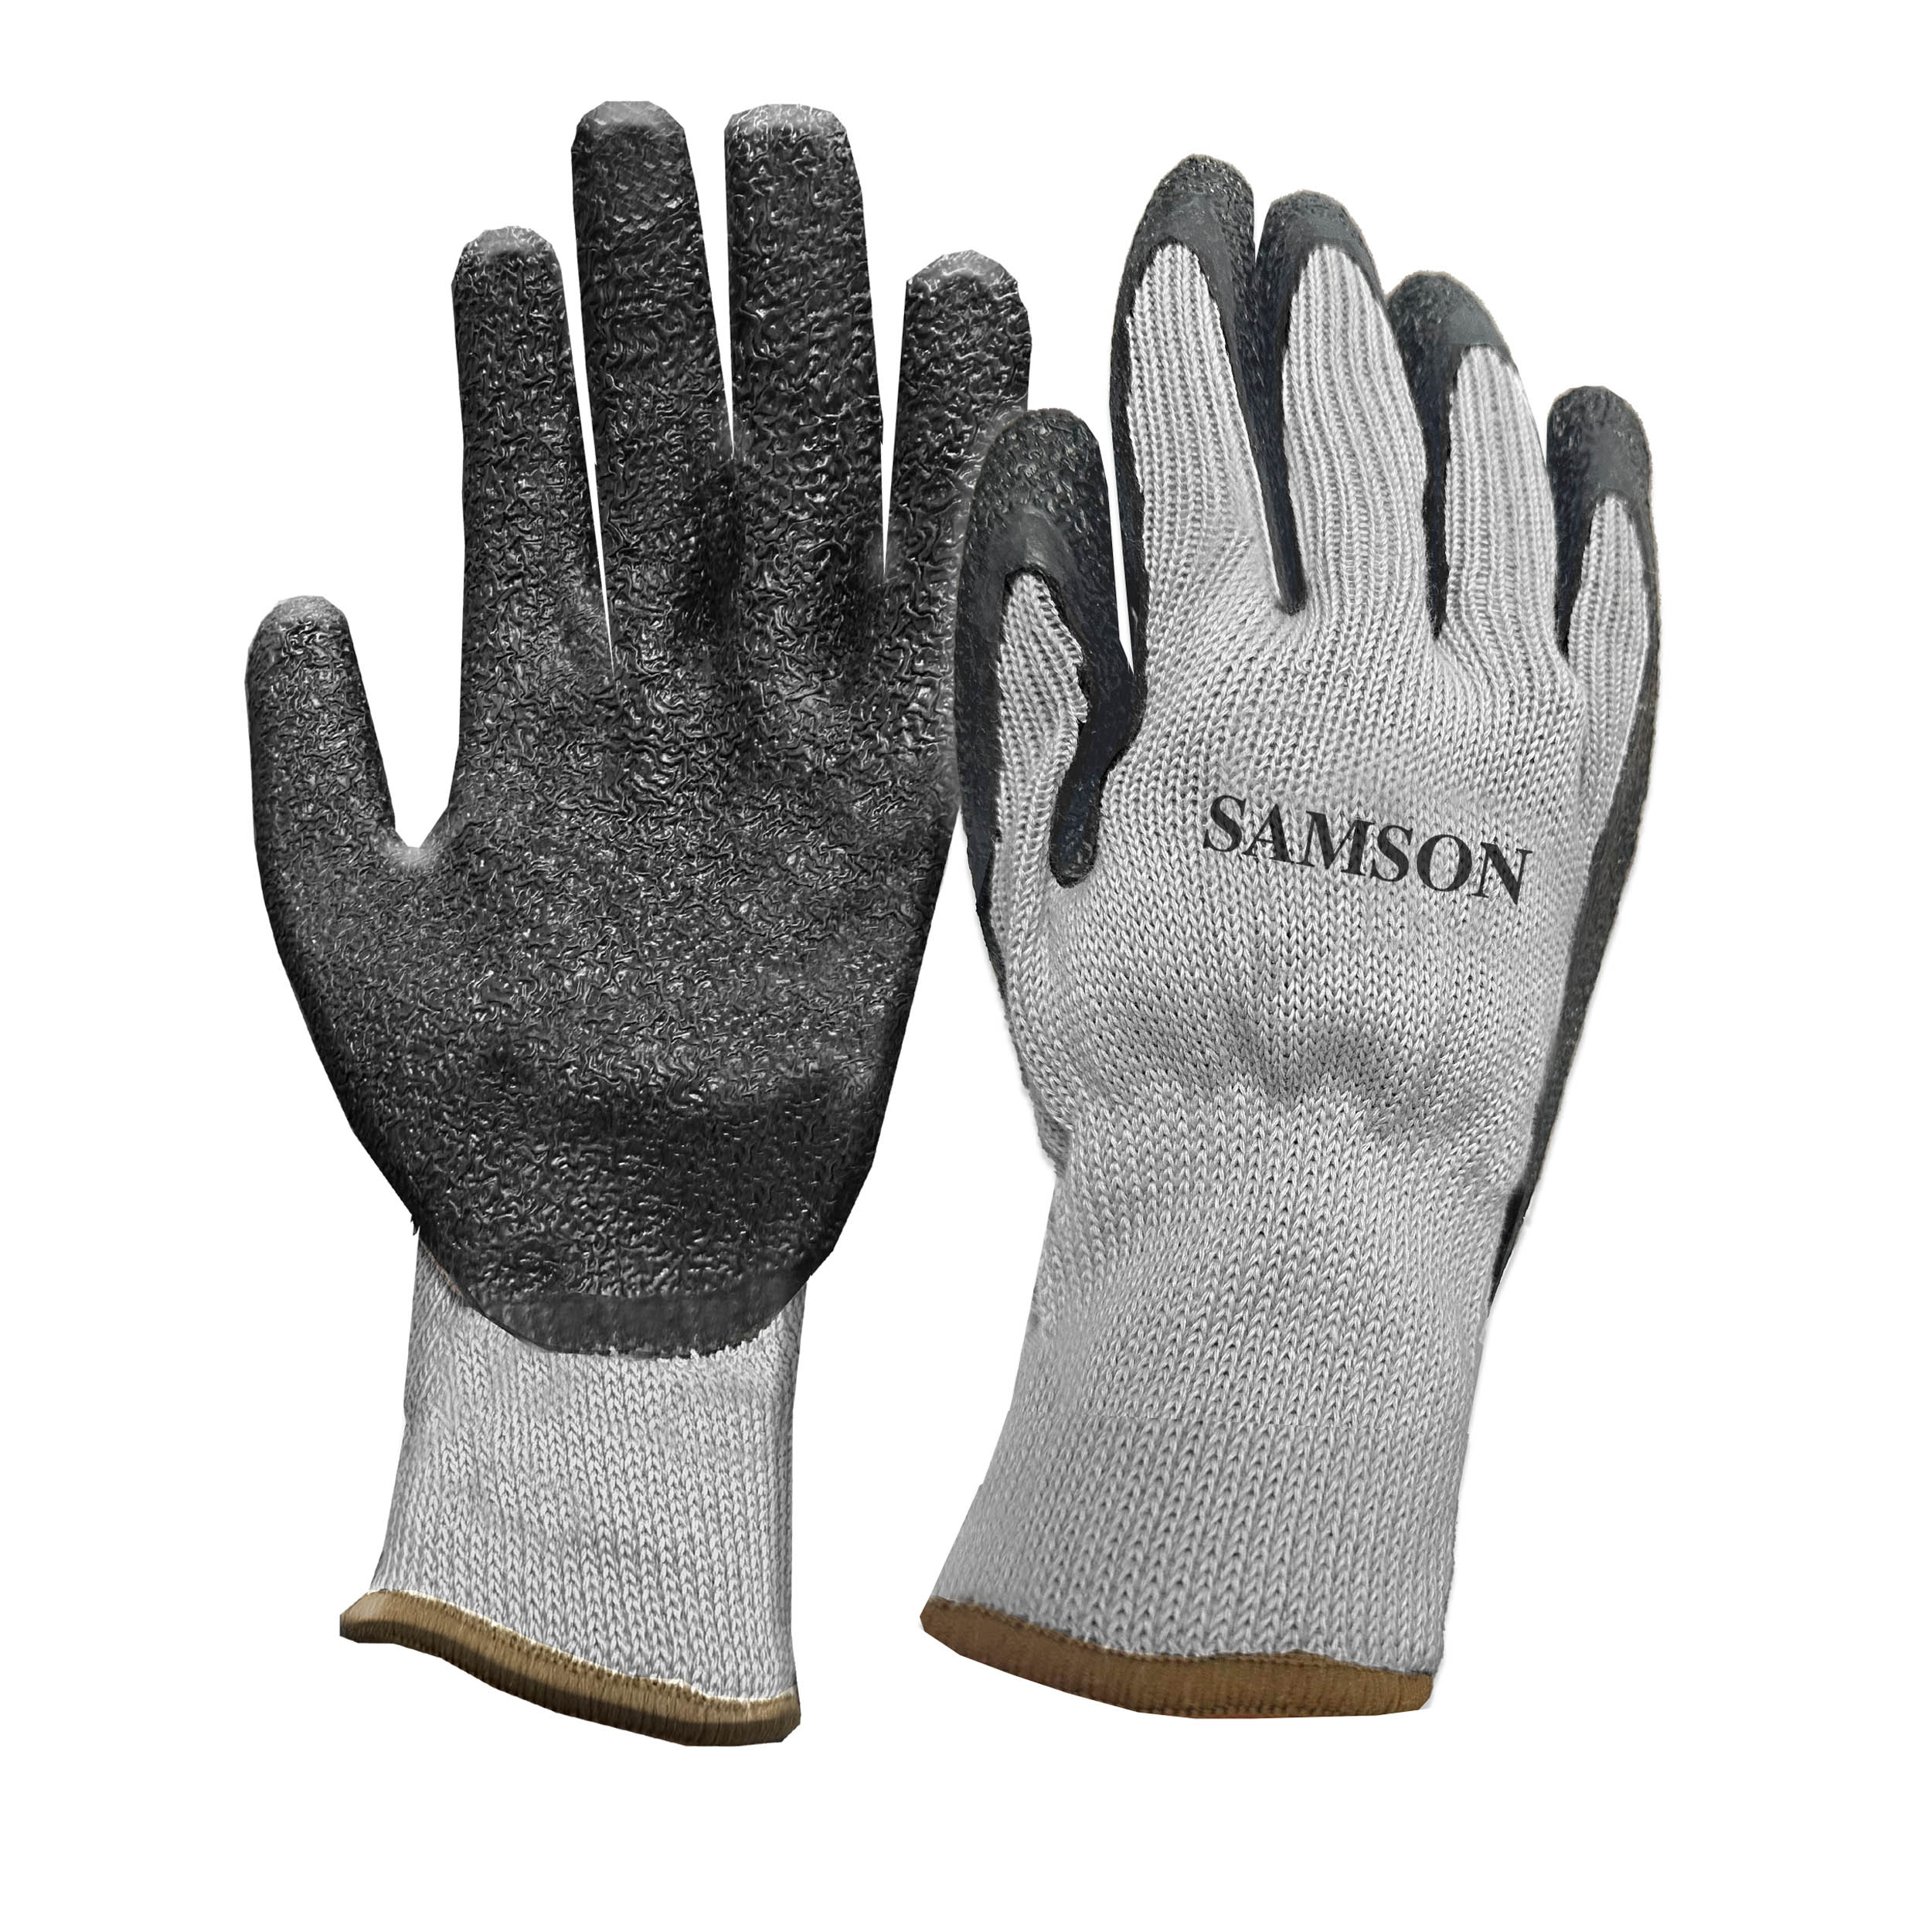 Samson Rubber Coated Gloves